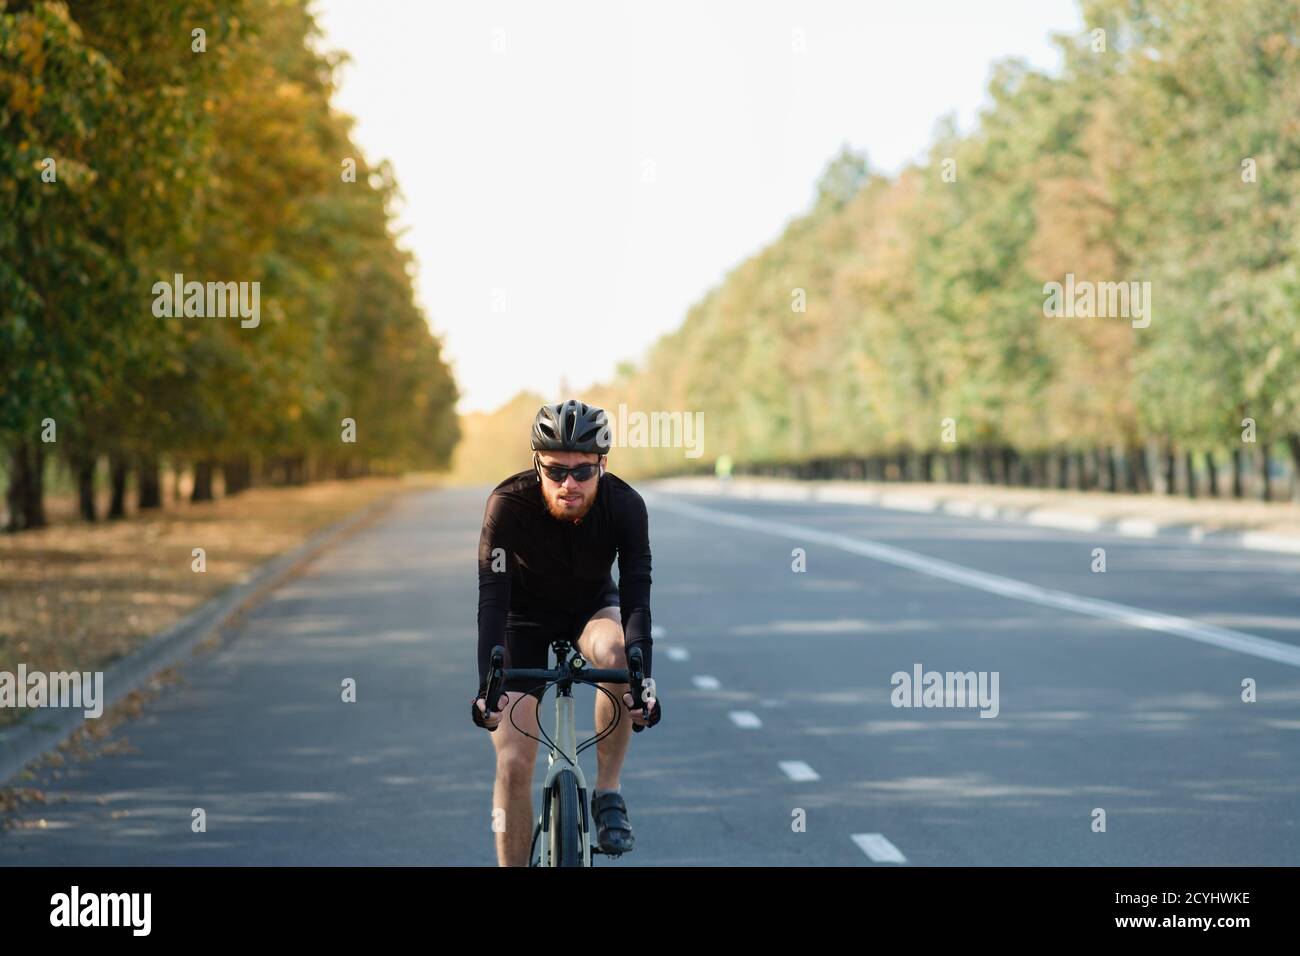 Ciclista della strada che si esercita su una bici della ghiaia. Allenamento in bicicletta all'aperto, bicicletta e sportivo dall'aspetto moderno, stile di vita felice e attivo Foto Stock